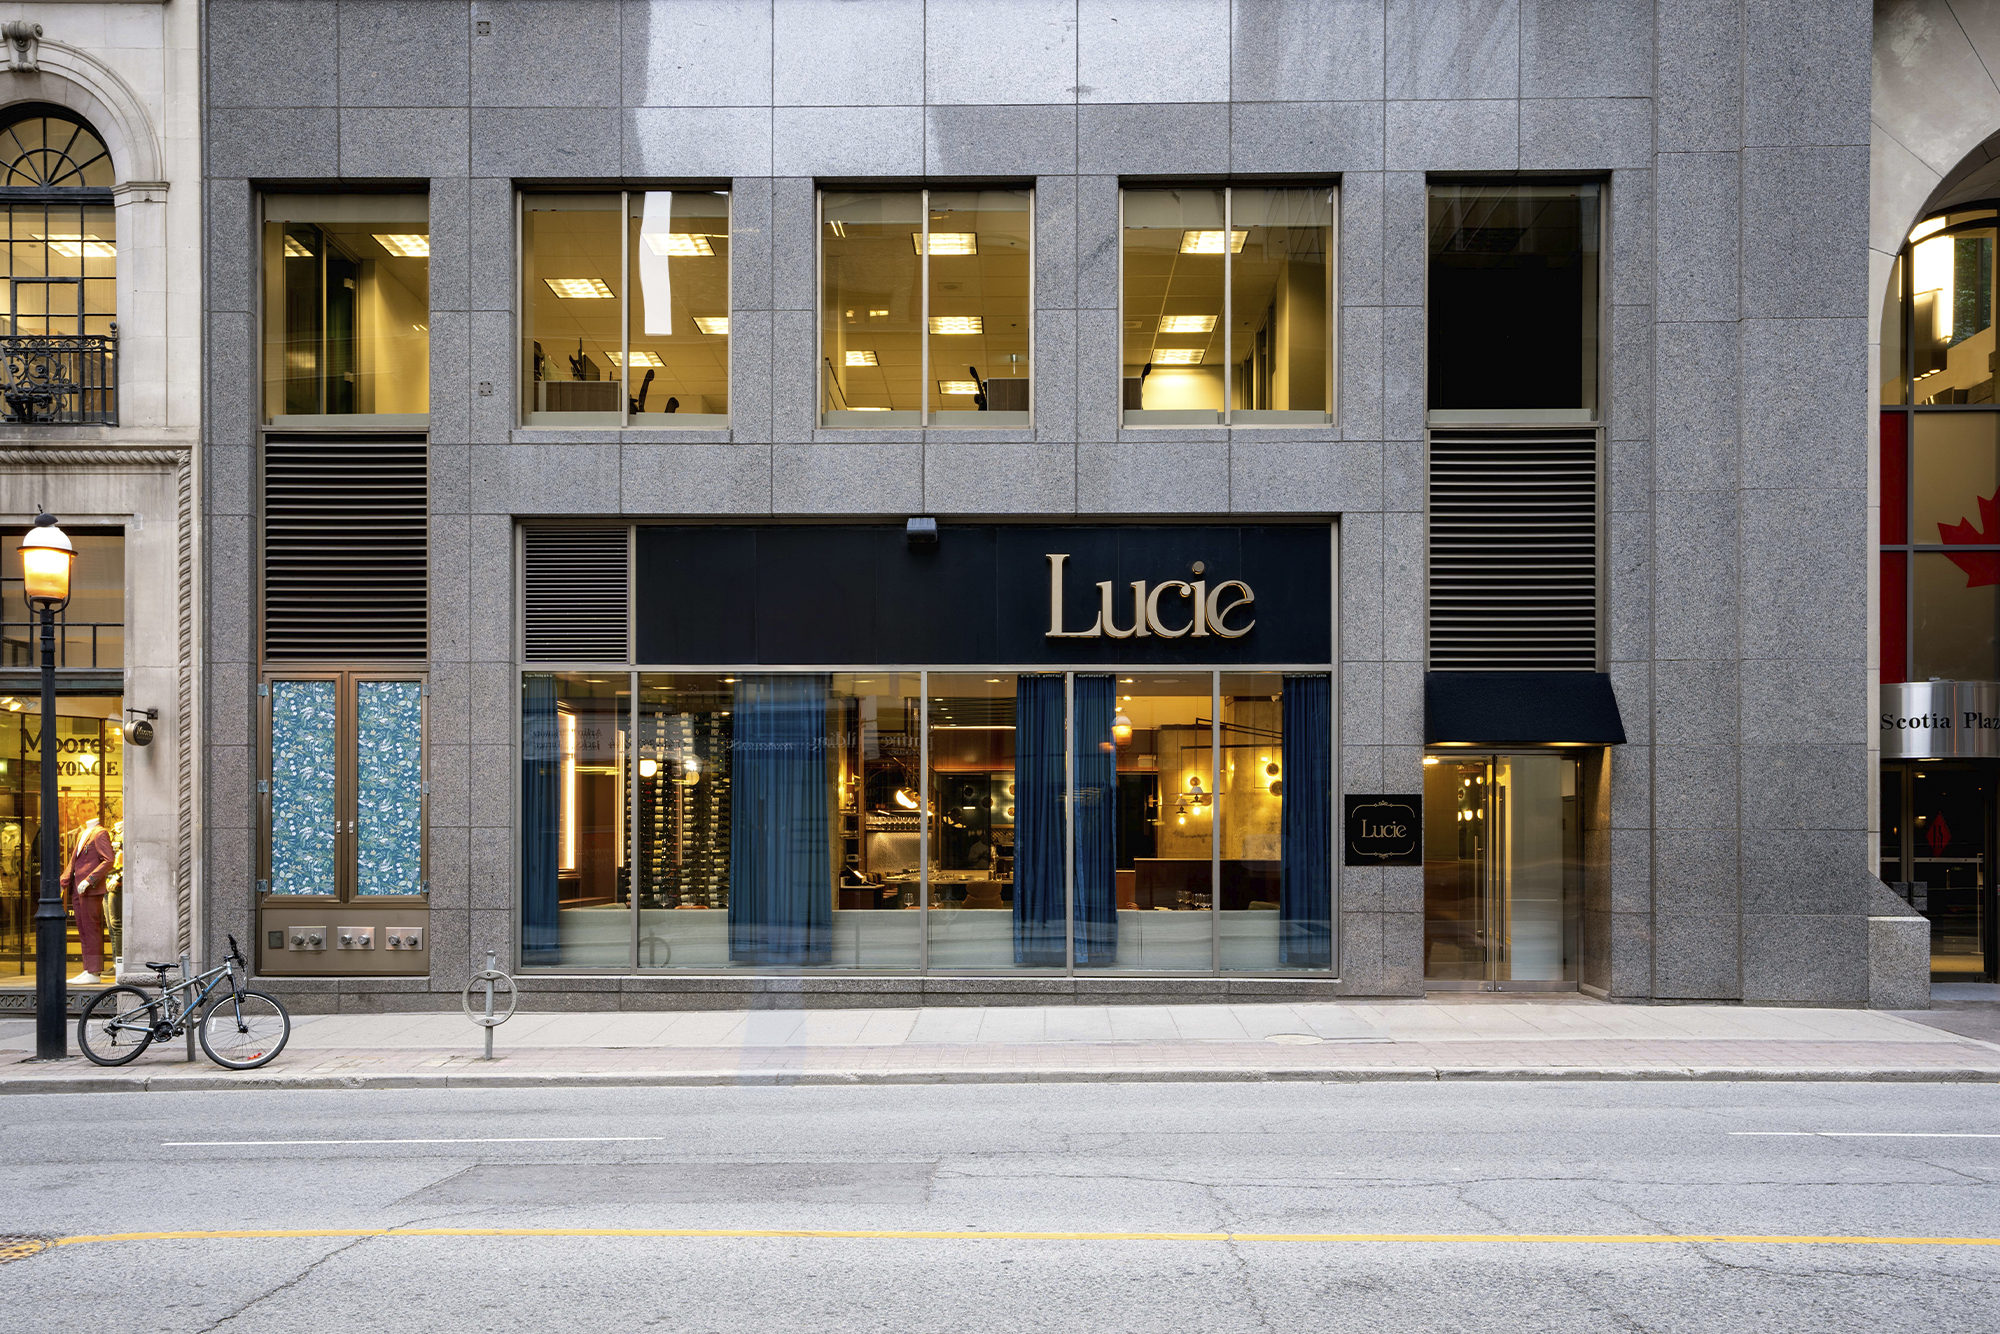 Restaurant Lucie